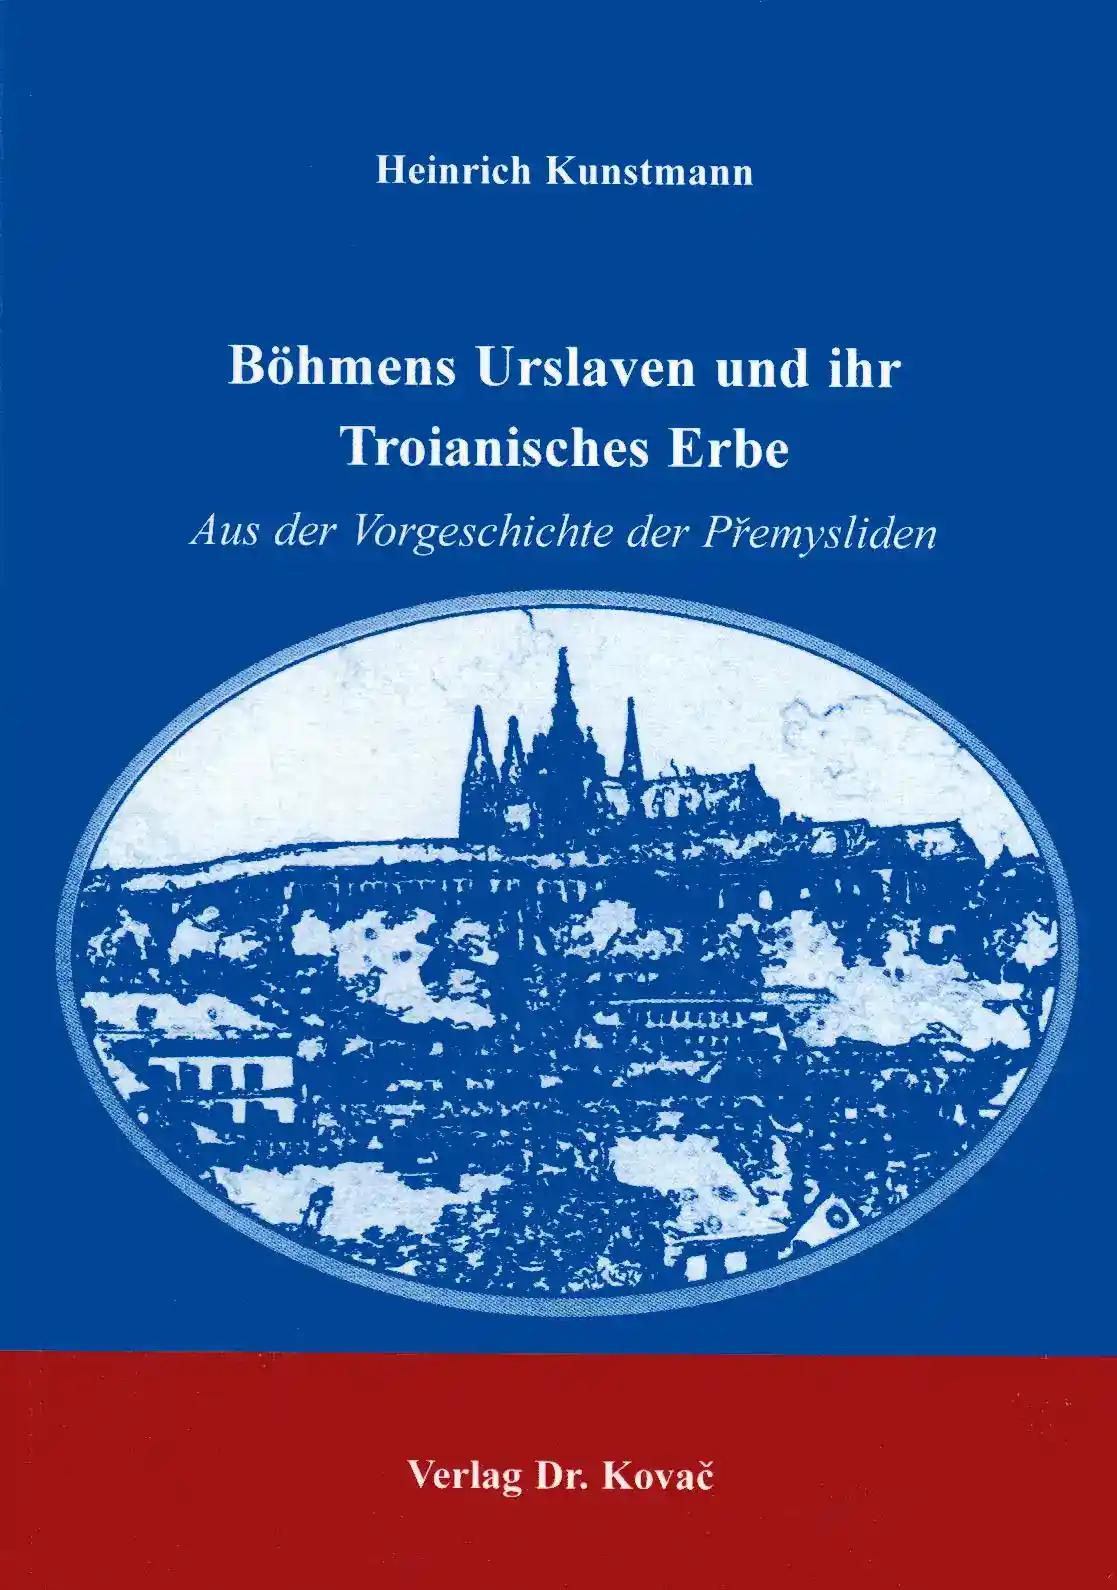 BÃ hmens Urslaven und ihr Troianisches Erbe, Aus der Vorgeschichte der Premysliden - Heinrich Kunstmann